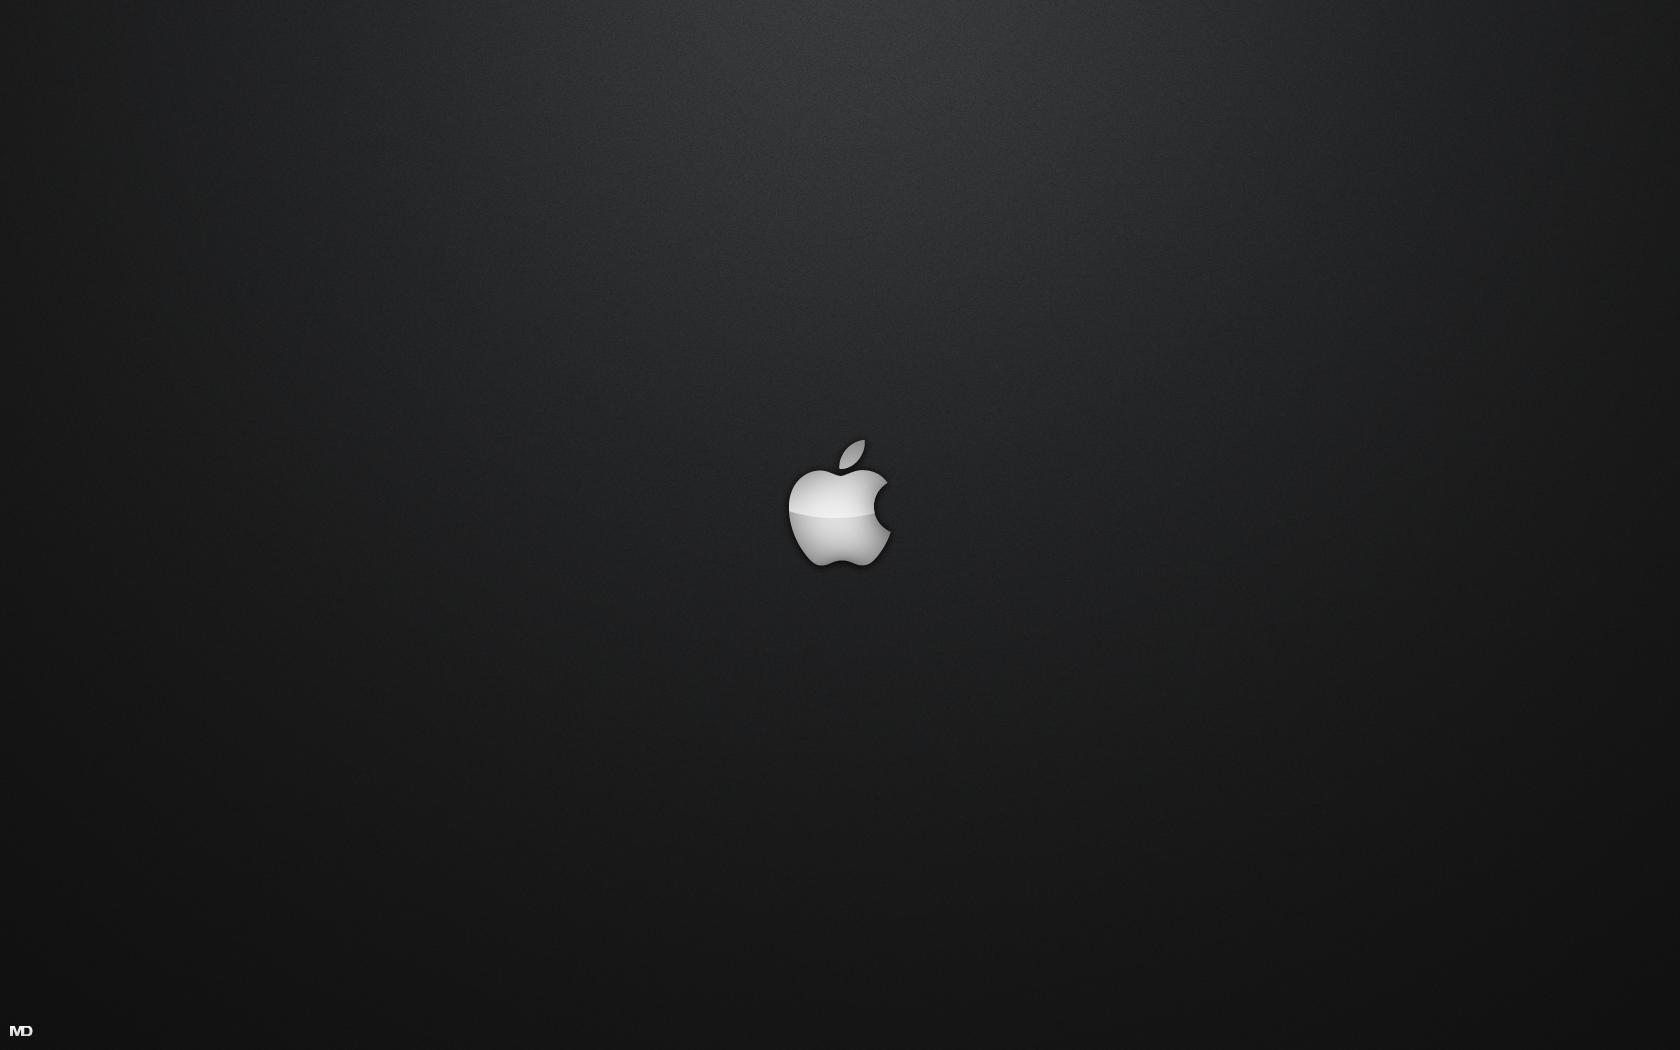 Black Cool Apple Mac Wallpaper Best Wallpaper. High